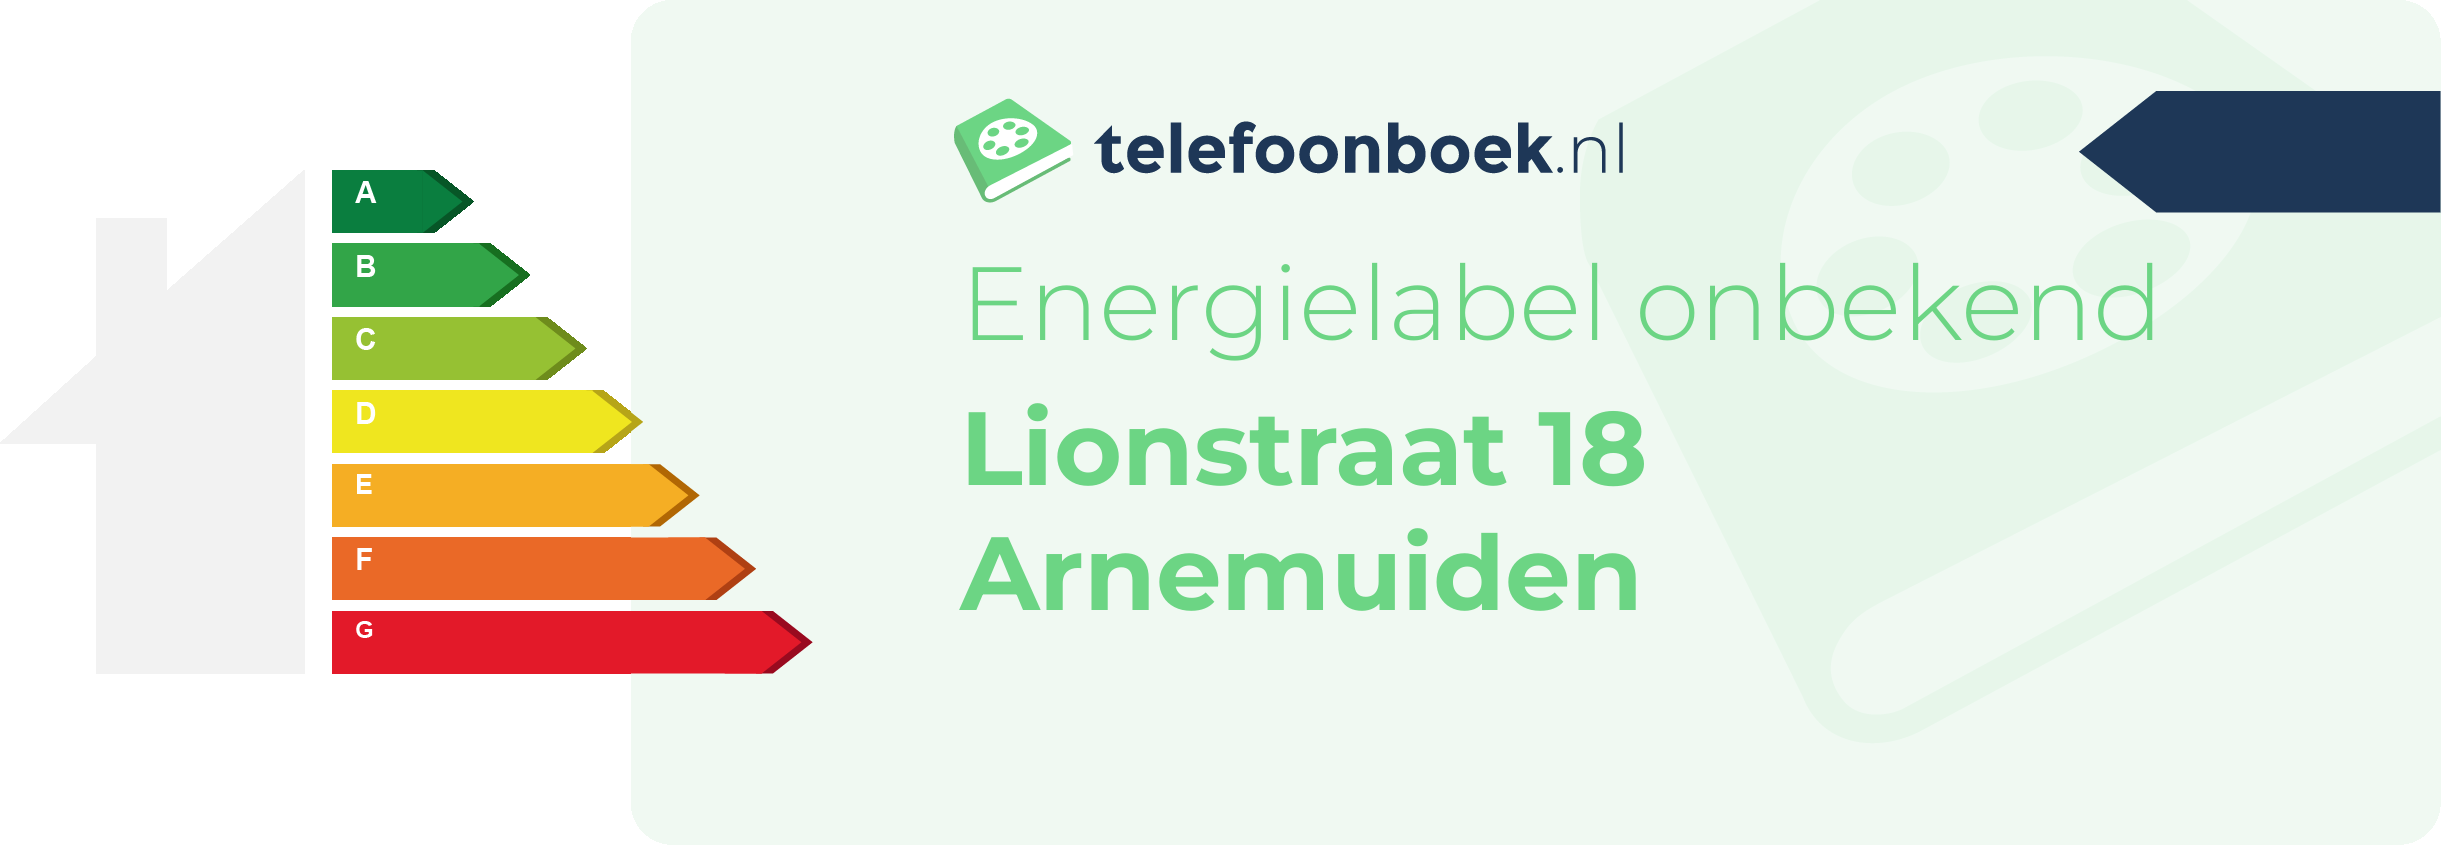 Energielabel Lionstraat 18 Arnemuiden